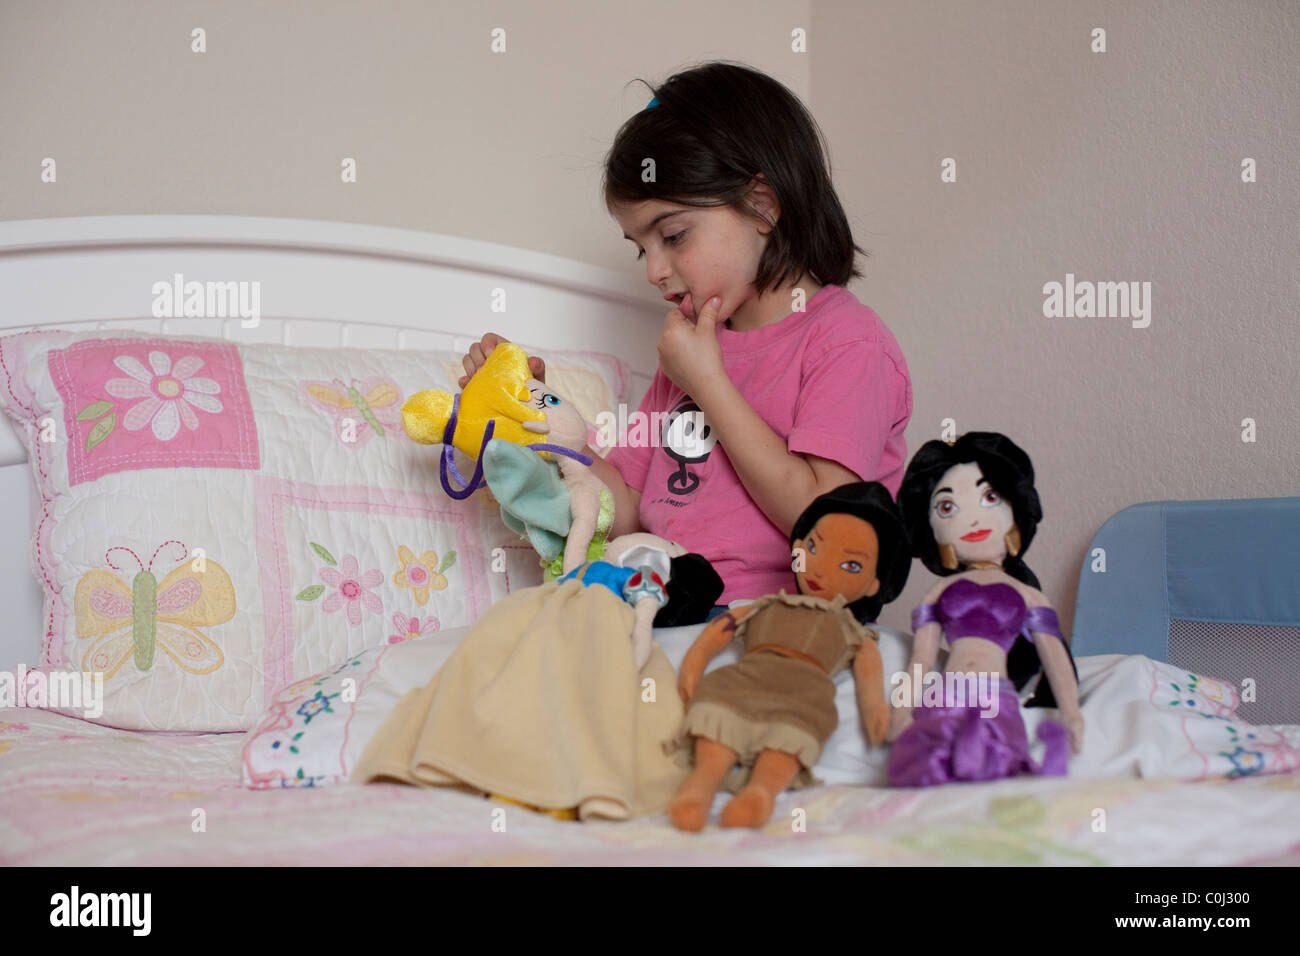 5-year-old girl mexico-joue avec ses poupées personnages de Disney Blanche Neige, la princesse Jasmine, Pocahontas, Tinker Bell Banque D'Images